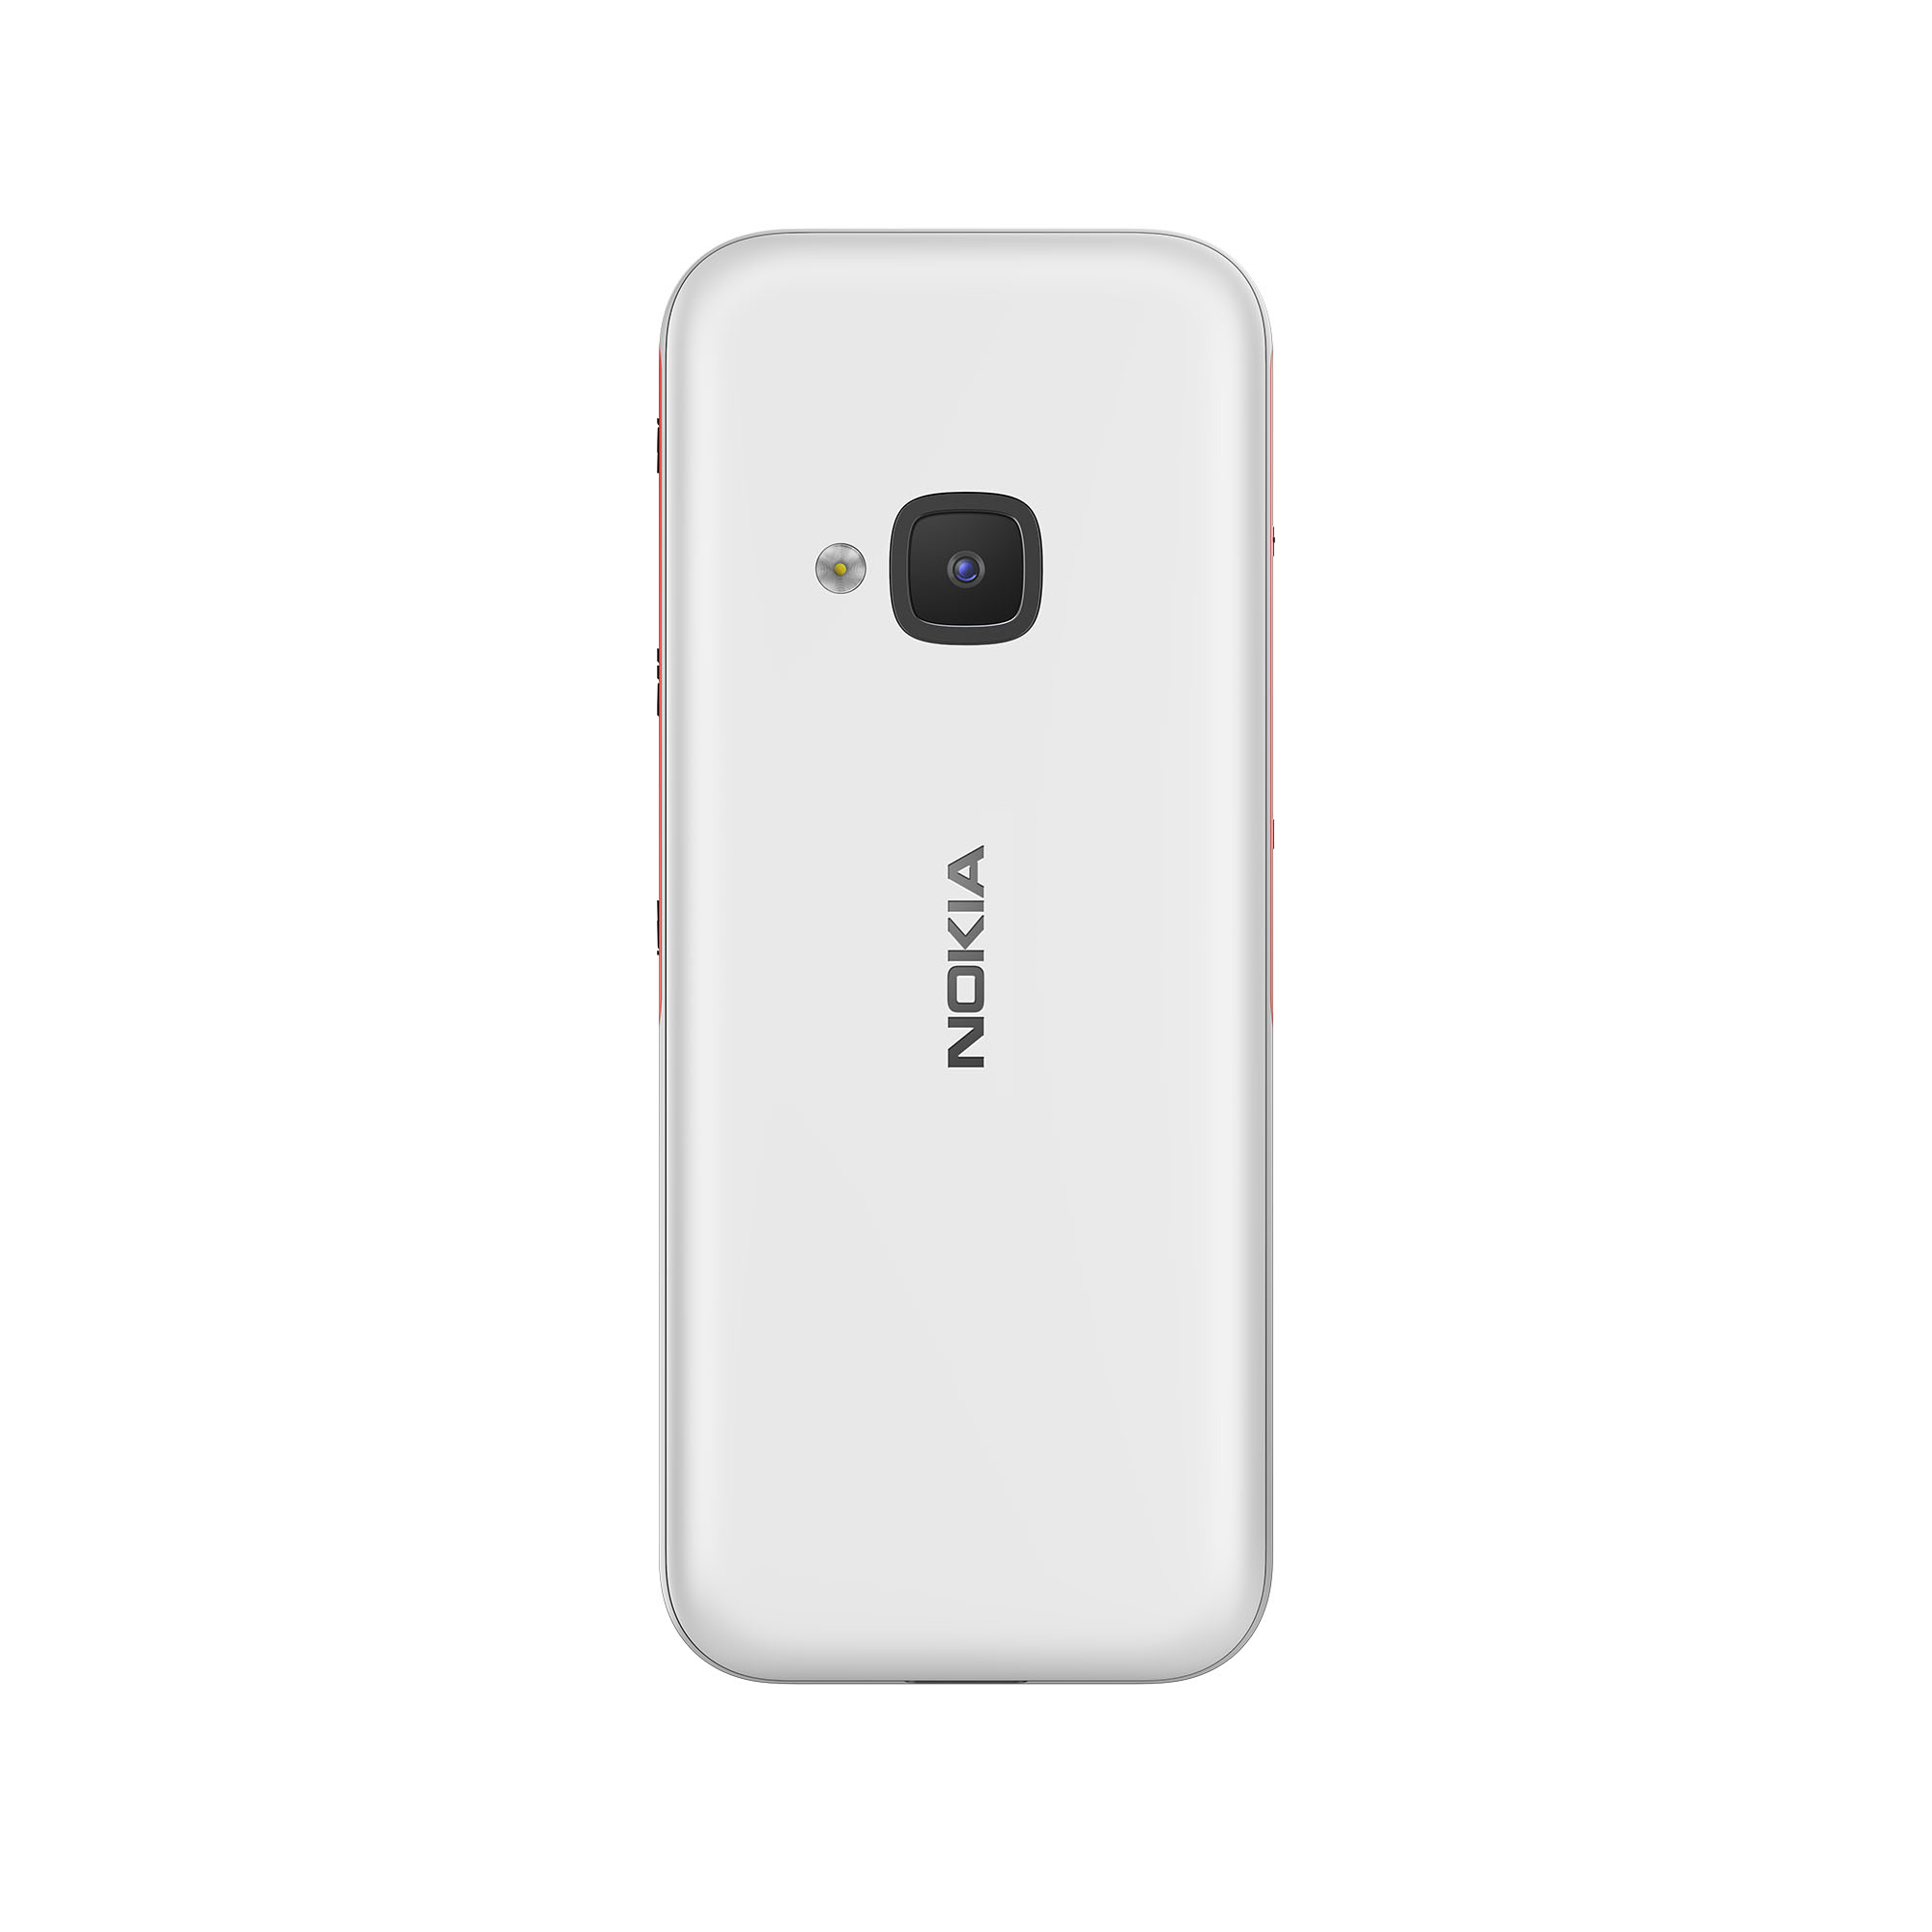 Nokia 5310 chính thức lên kệ tại thị trường Việt Nam với giá 989,000 VND